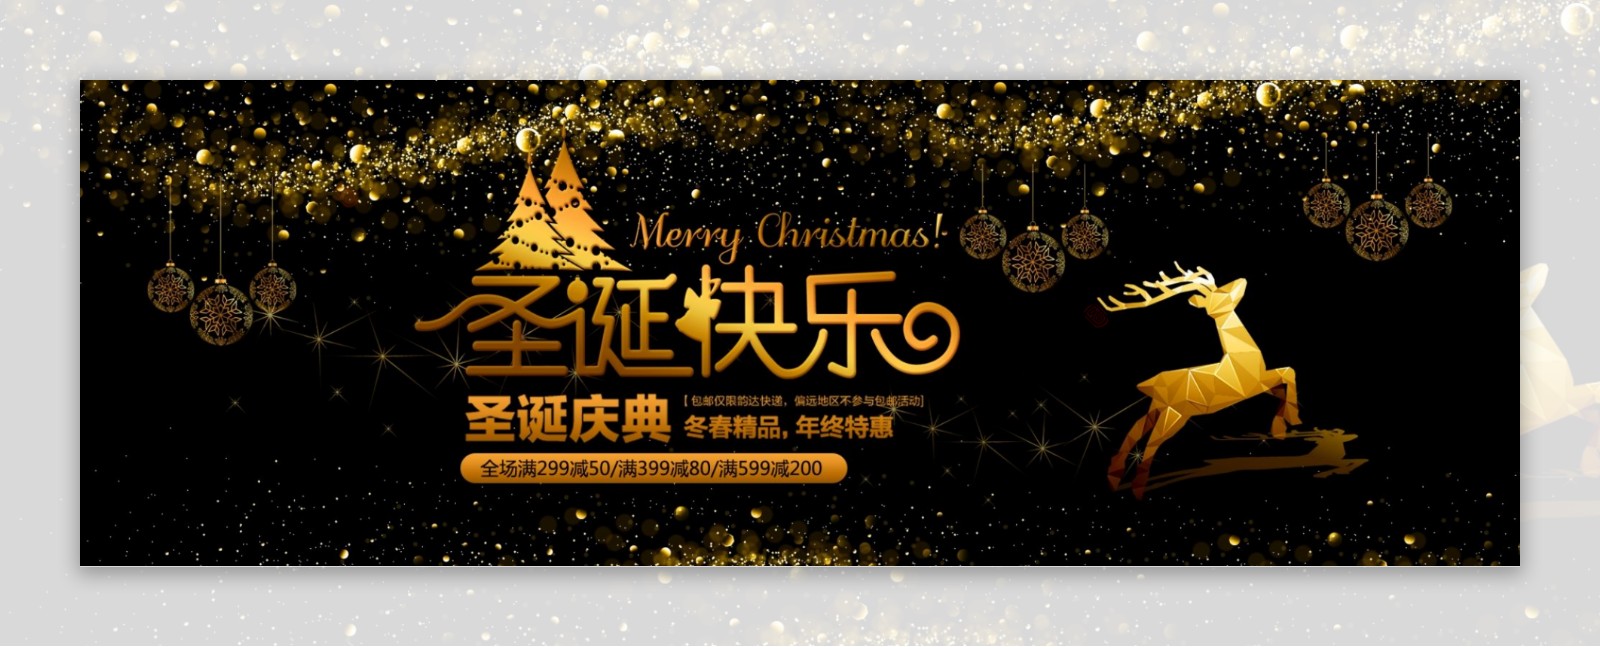 黑金色时尚麋鹿圣诞节促销淘宝banner